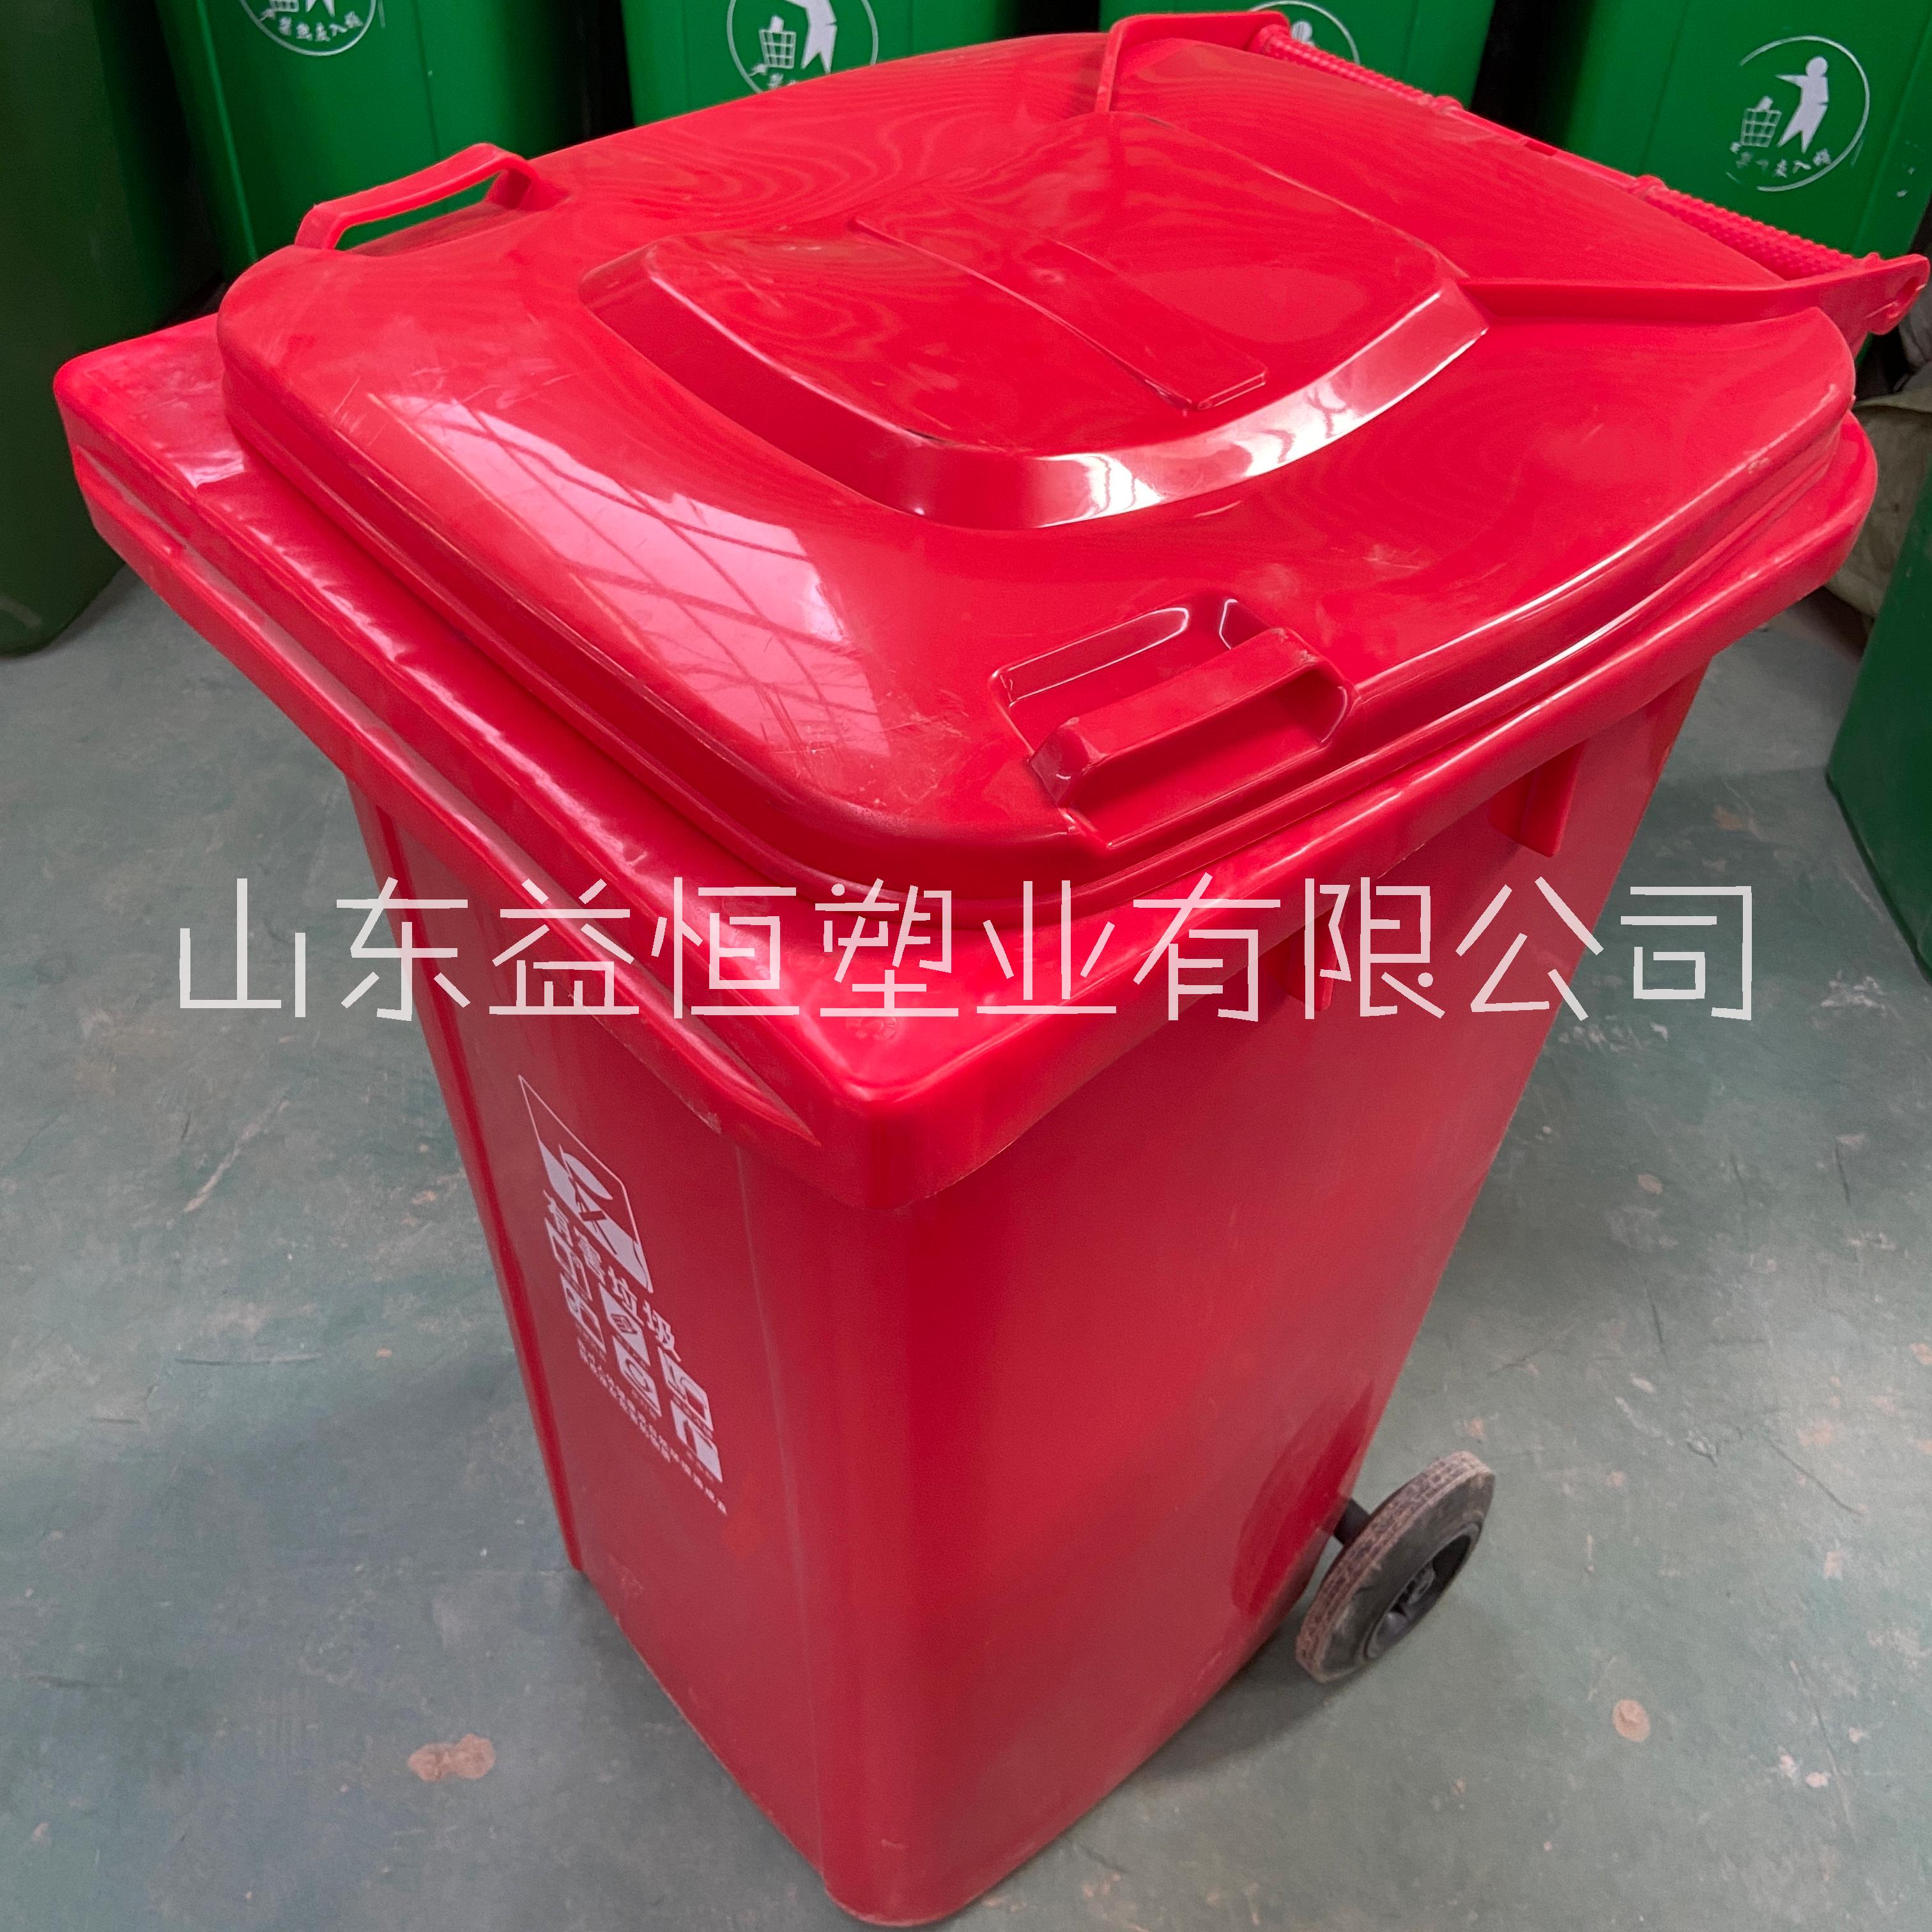 环卫分类垃圾桶厂家新国标塑料四色分类垃圾桶价格 环卫分类垃圾桶厂家